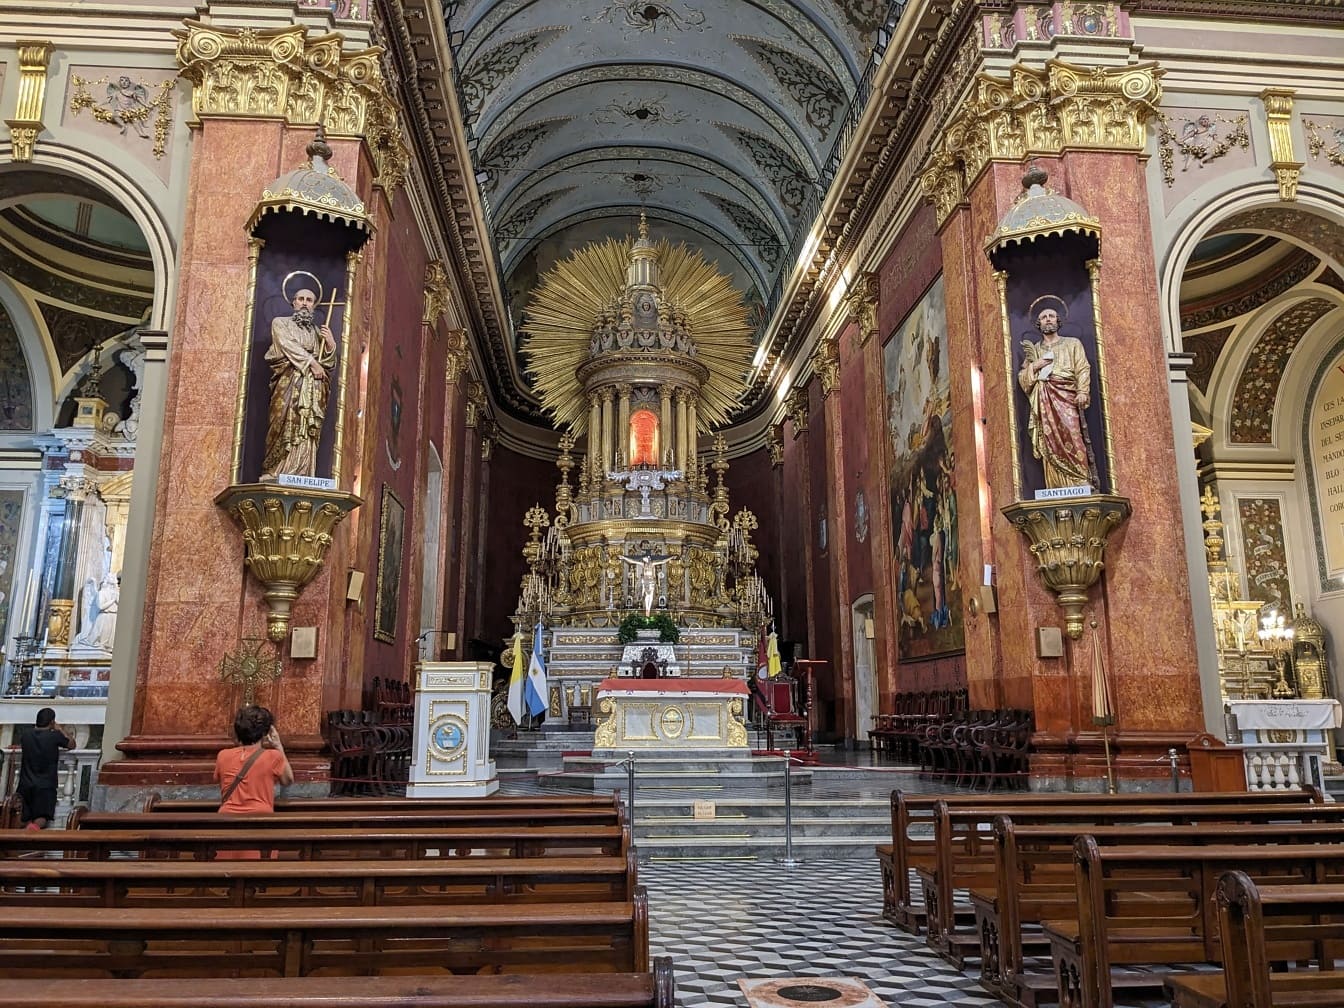 Saltan katedraalin sisätilat upealla alttarilla Saltan kaupungissa Argentiinassa